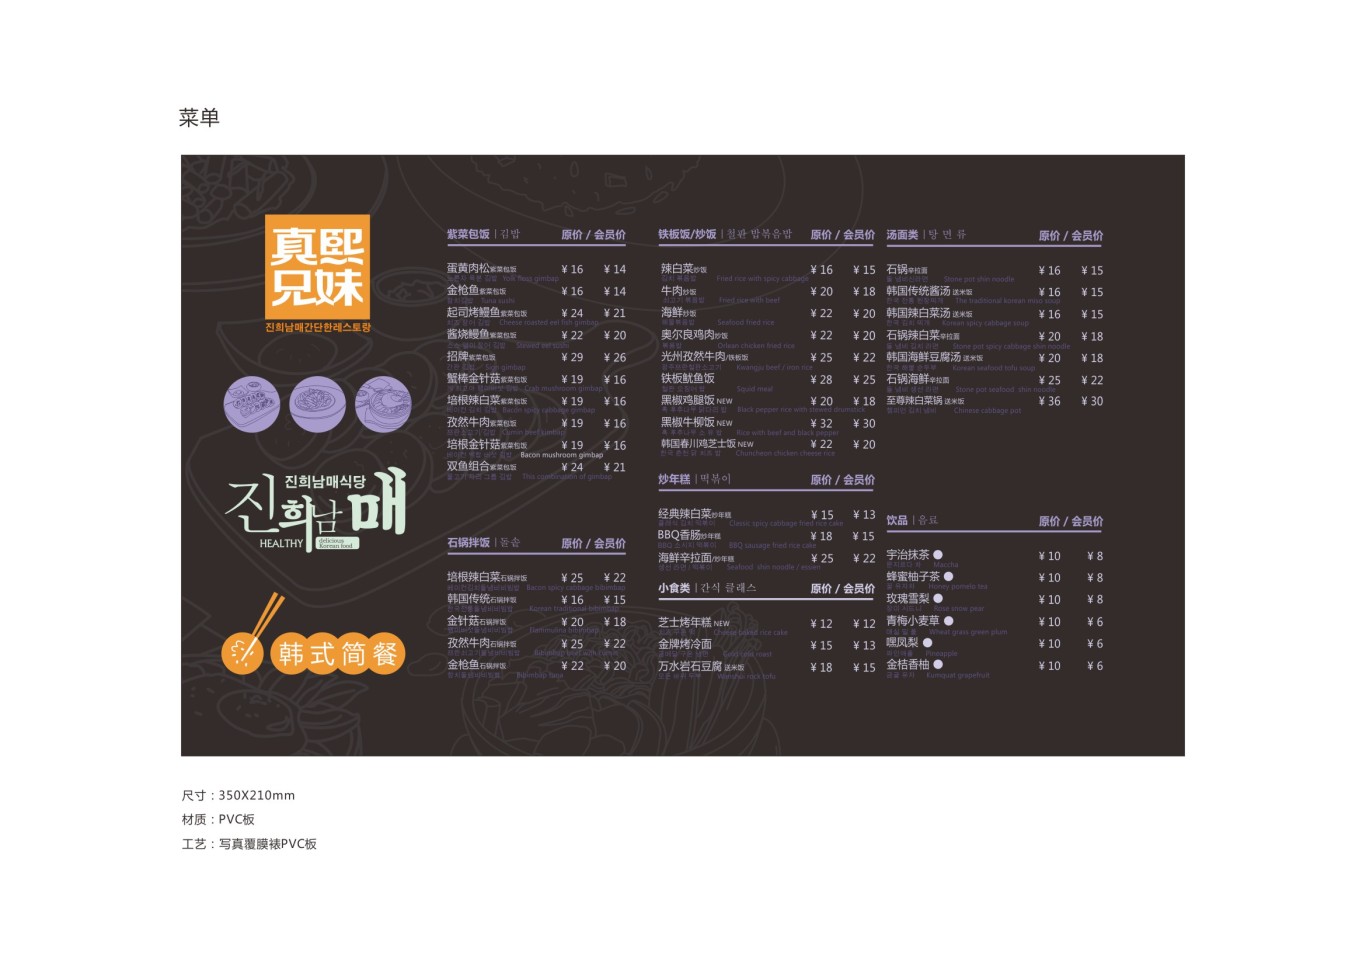 韩式简餐连锁品牌设计图27